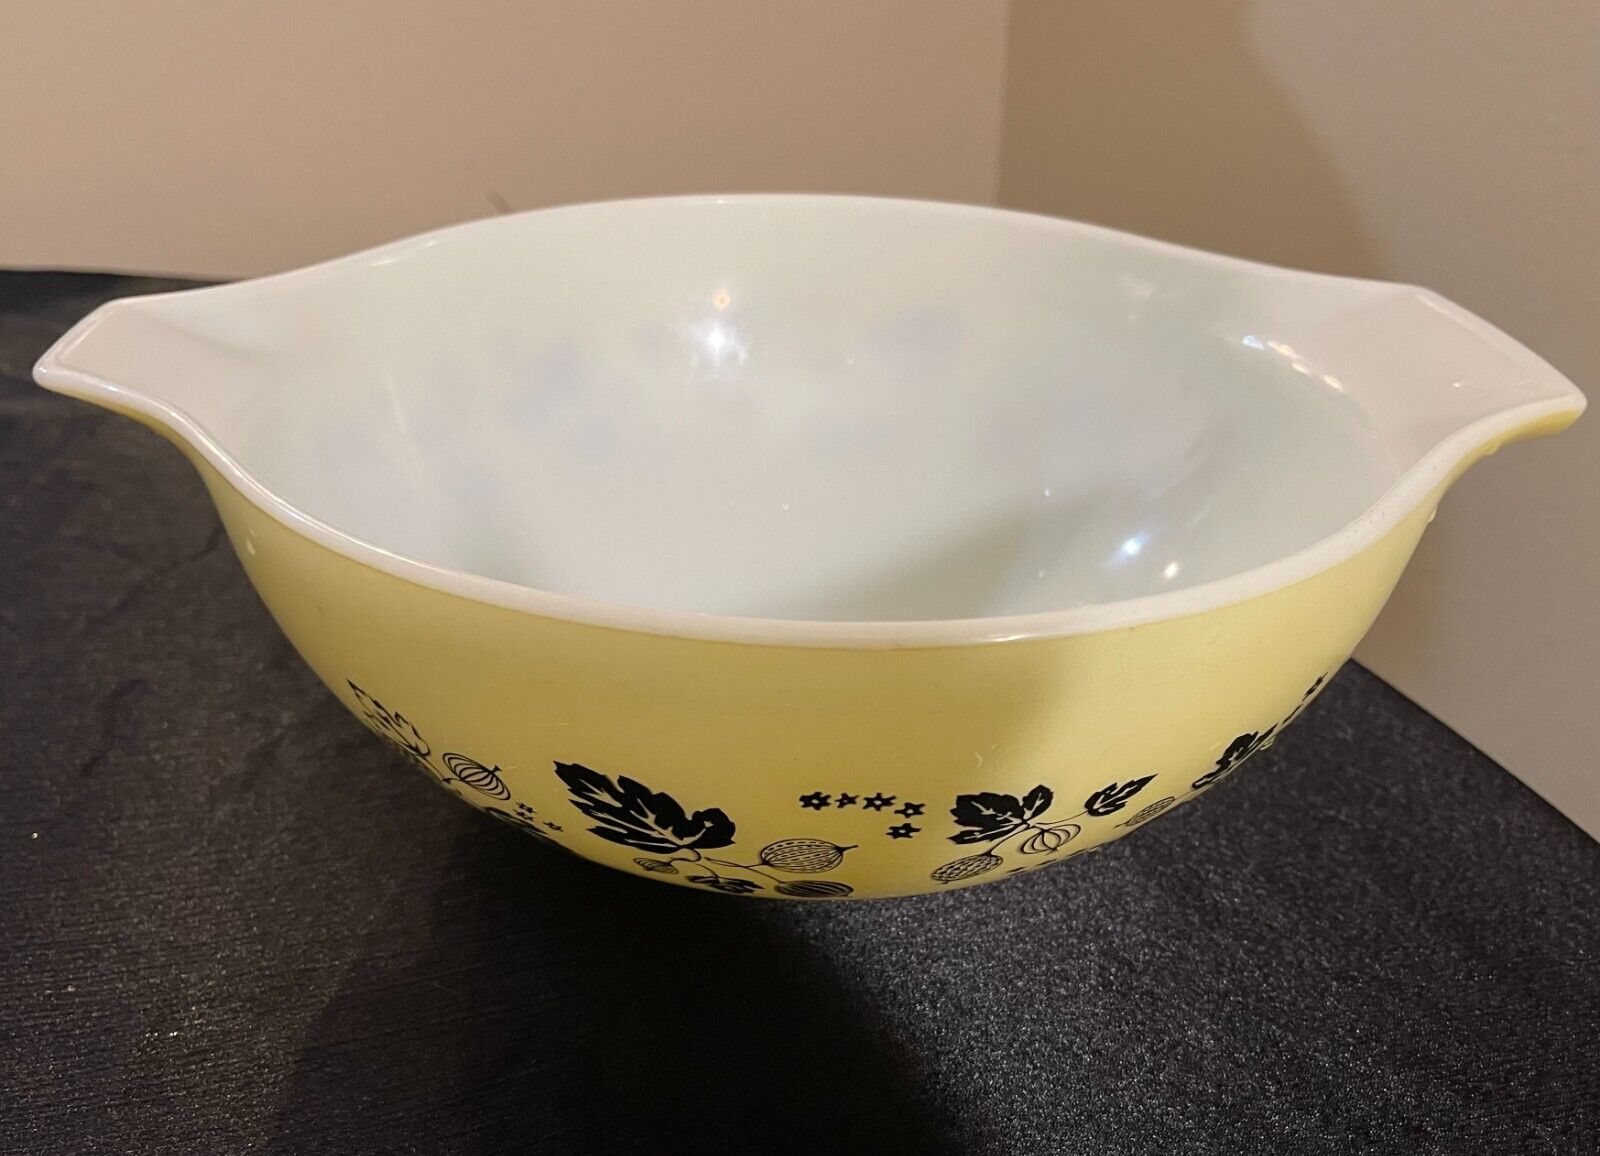 PRYEX Gooseberry yellow-black Cinderella Mixing Bowl #444 4qt.